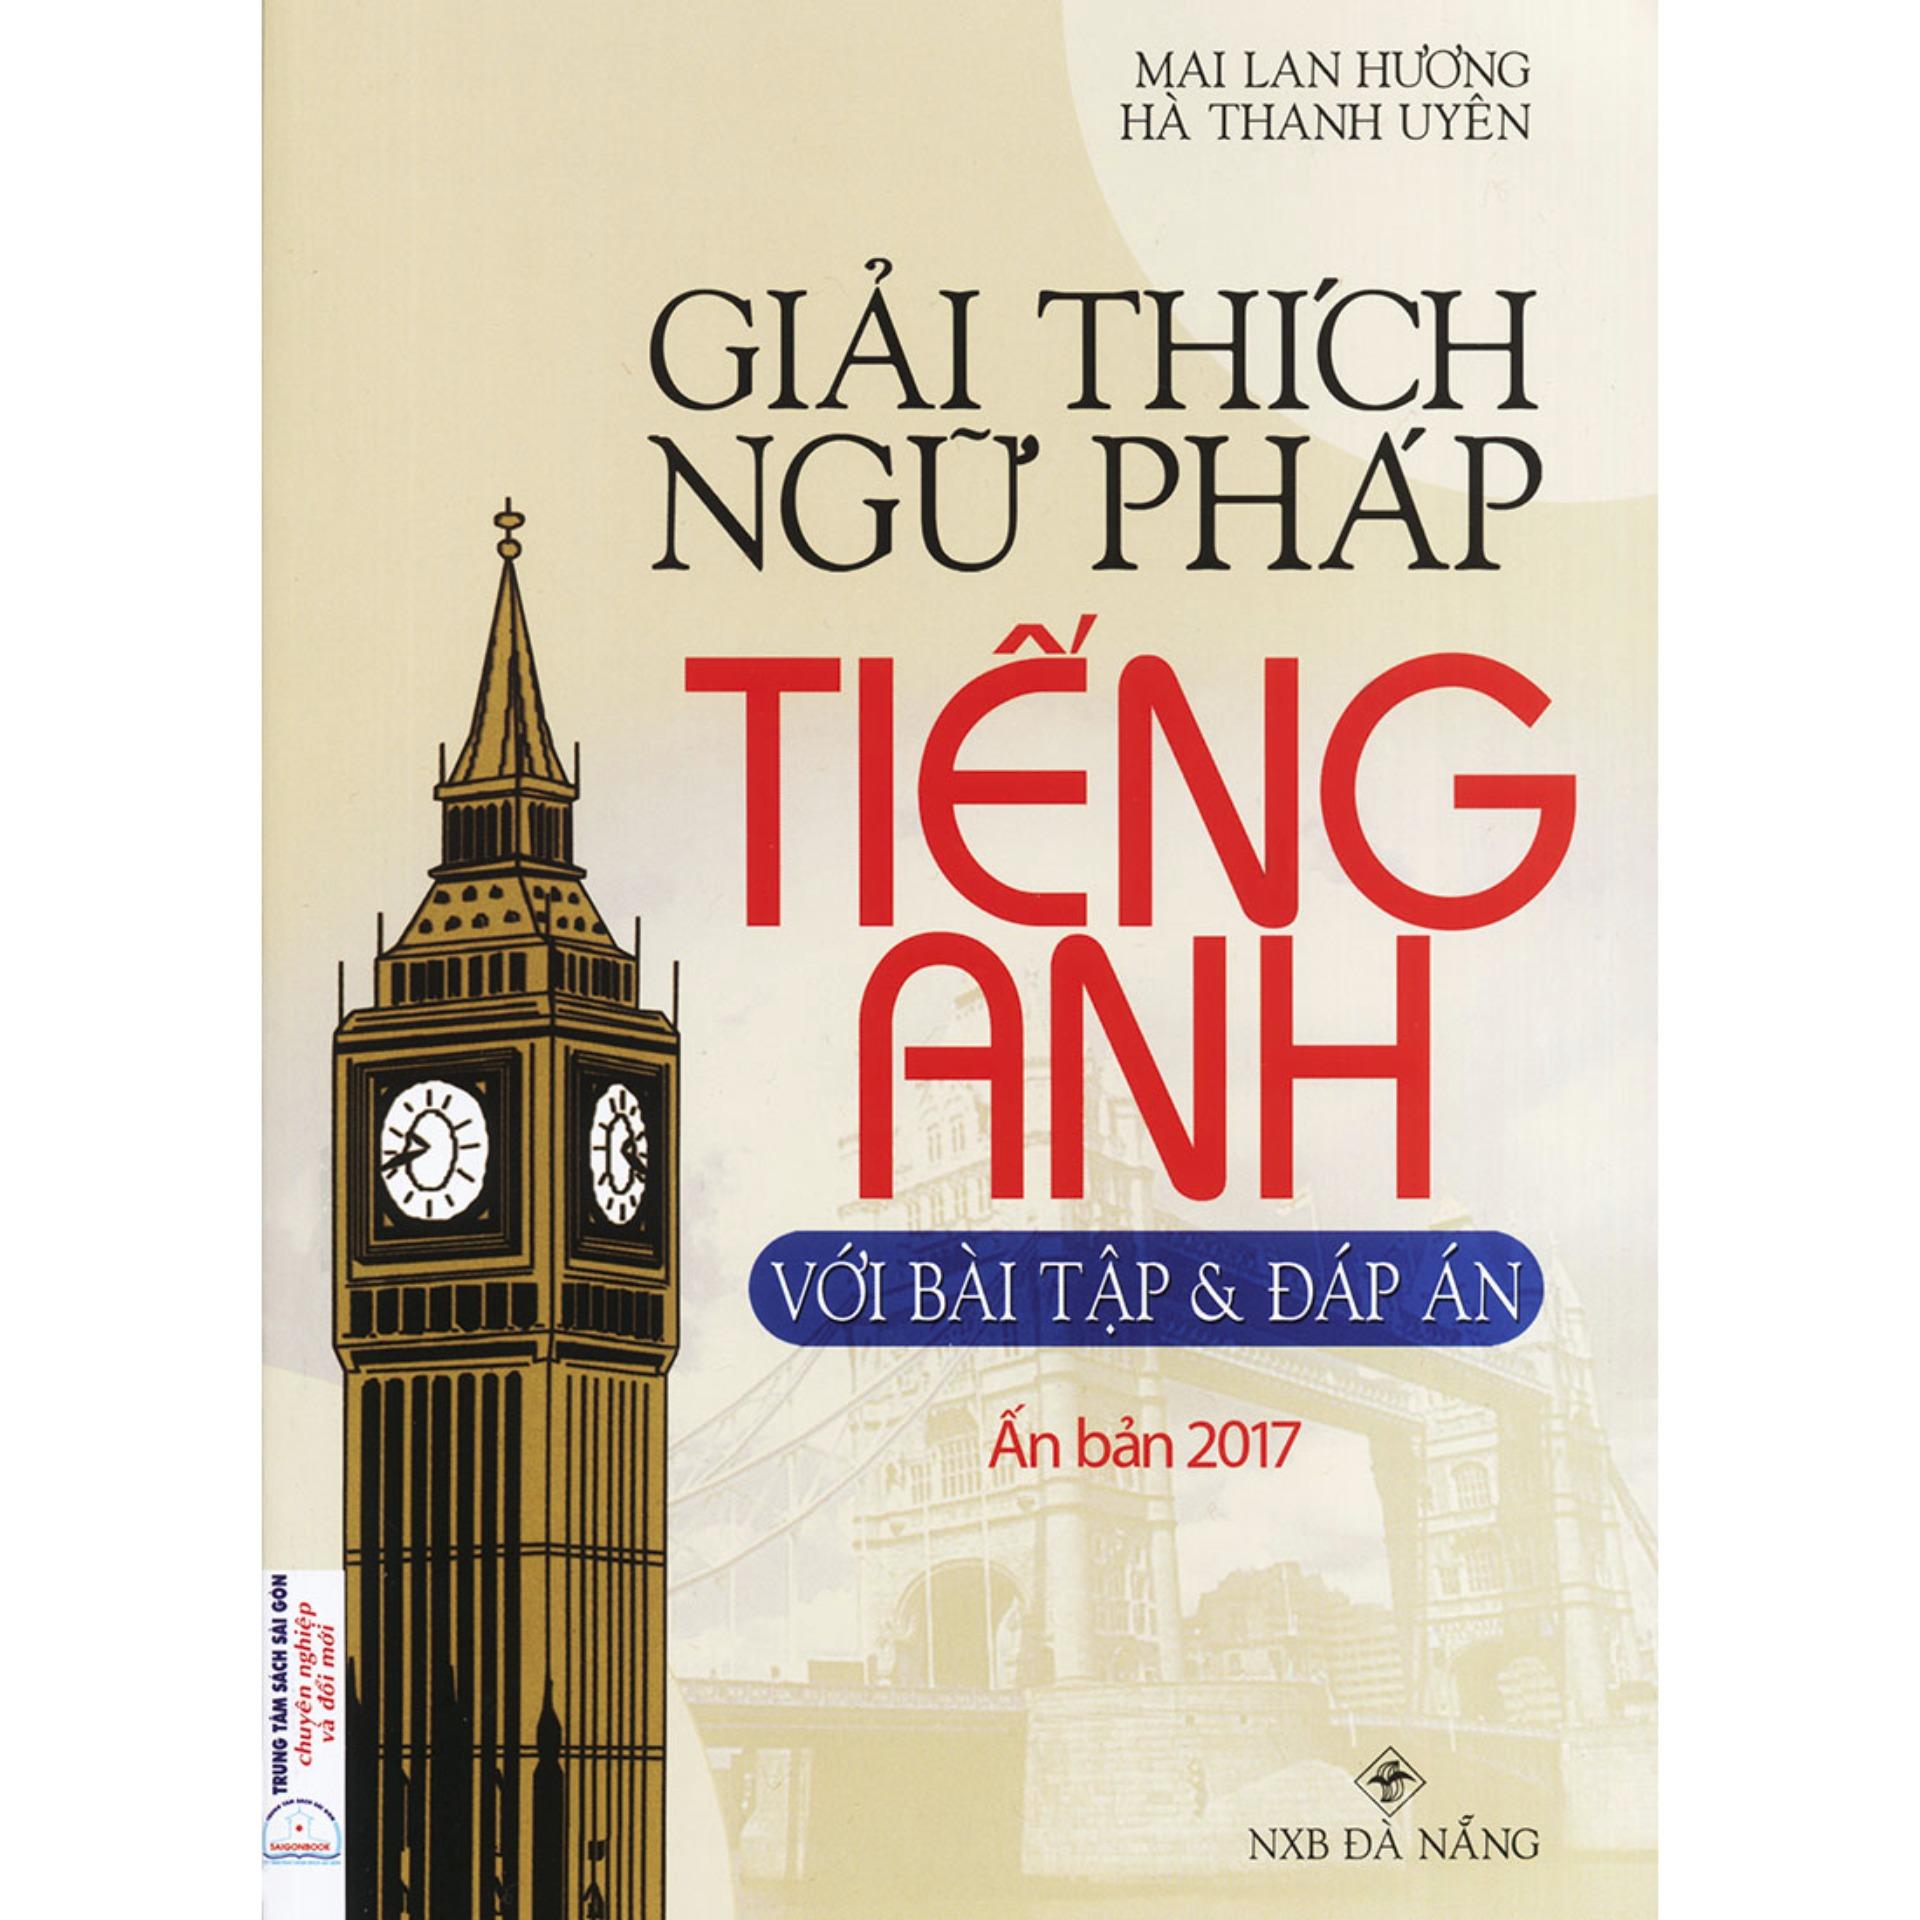 Giải thích ngữ pháp tiếng Anh - Mai Lan Hương (Ấn bản 2017)